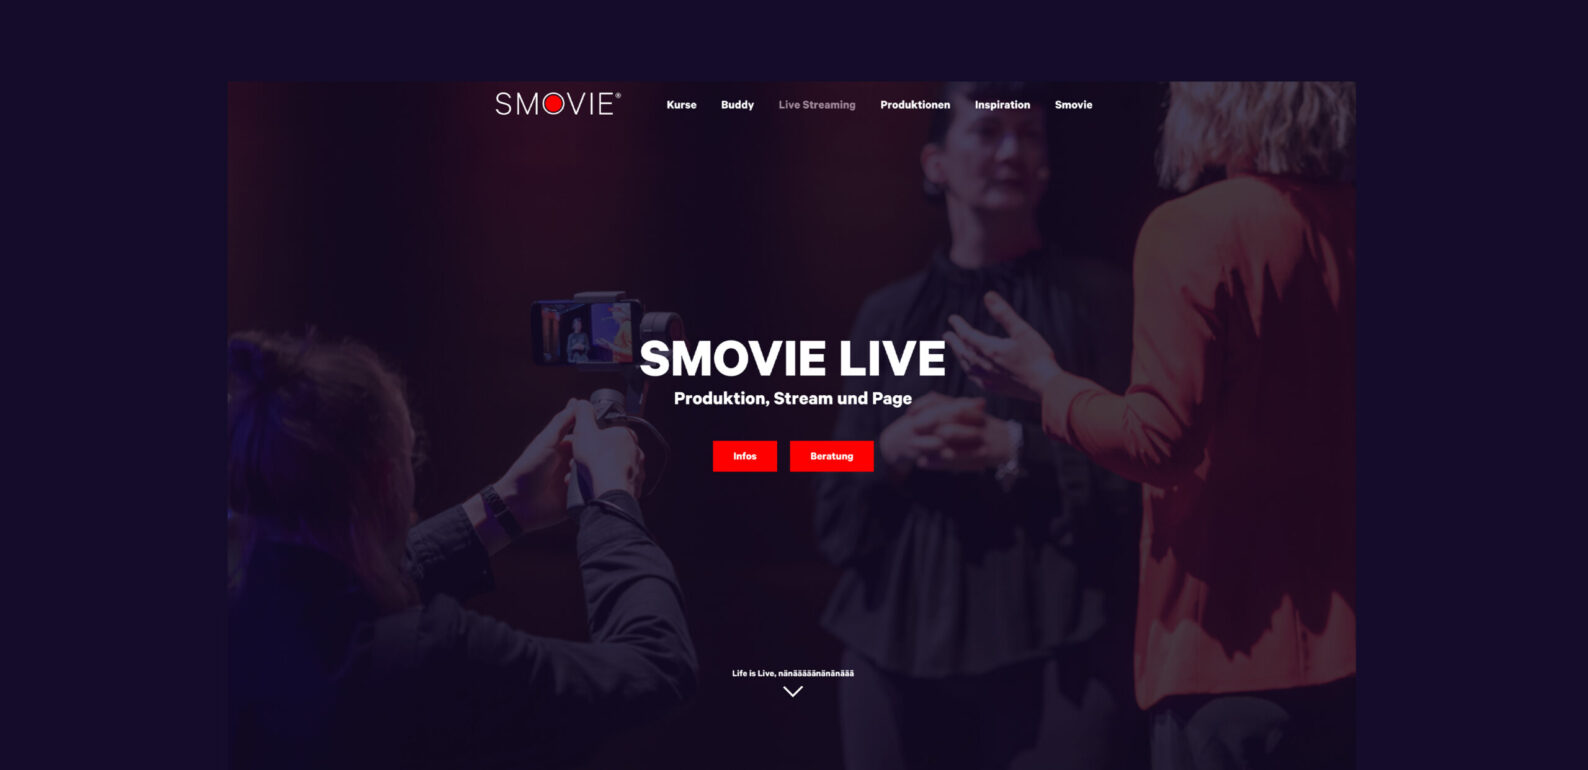 Smovie Live, Screenshot Website - Smovie Film GmbH, smovie.ch